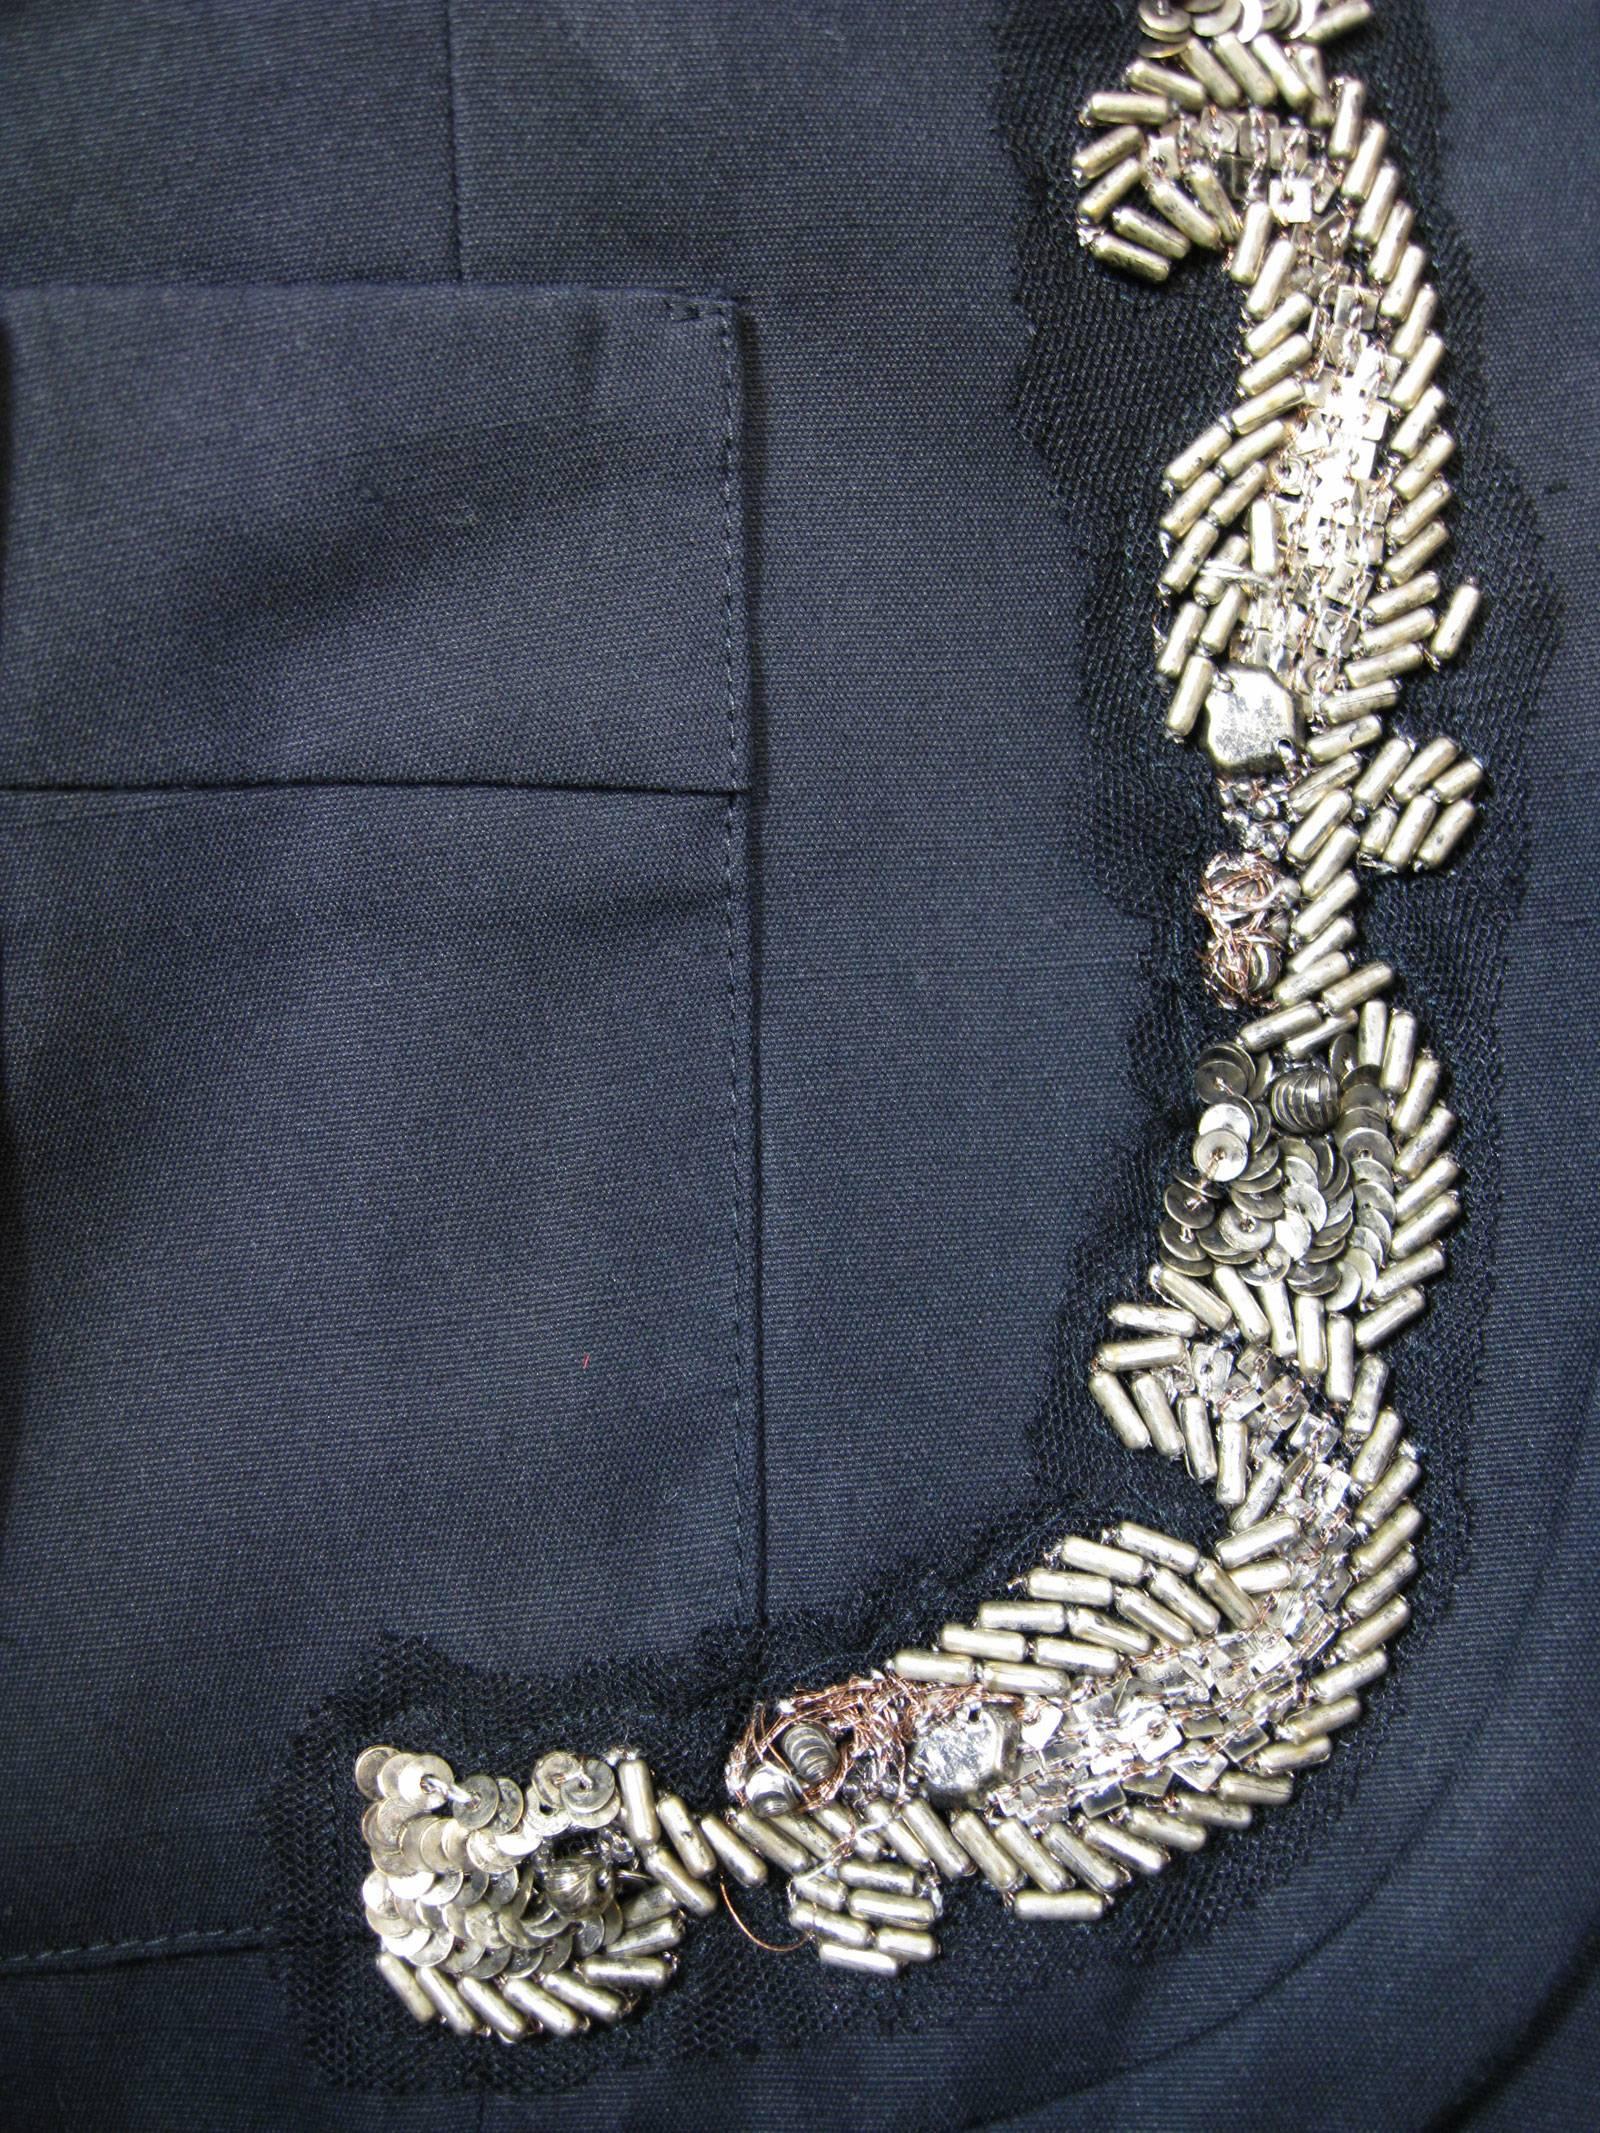 black embellished jacket